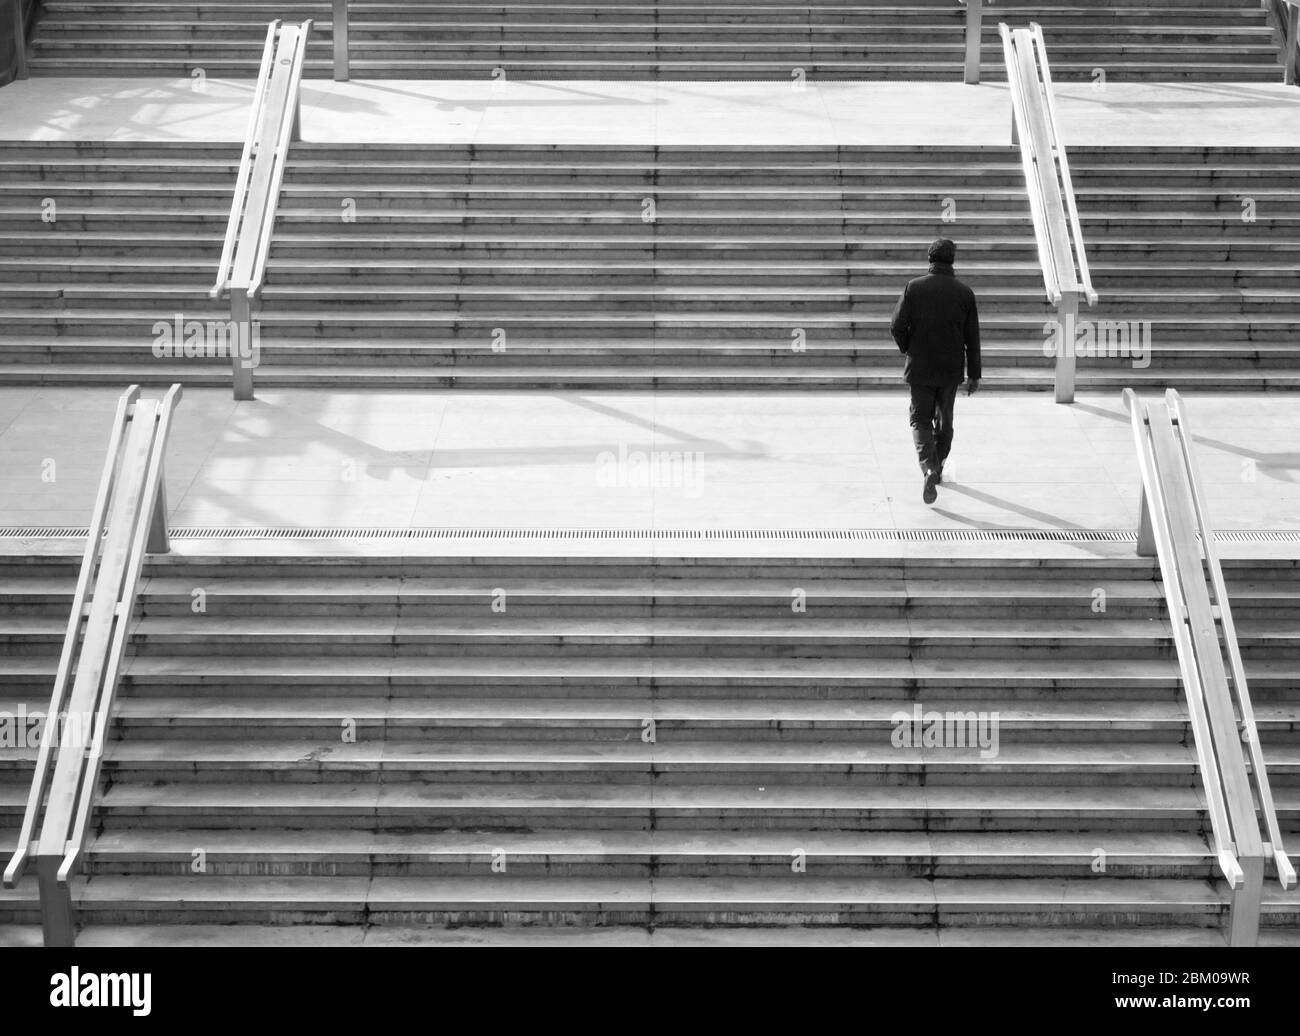 Homme marchant dans un escalier moderne dans une ville - photo monochrome Banque D'Images